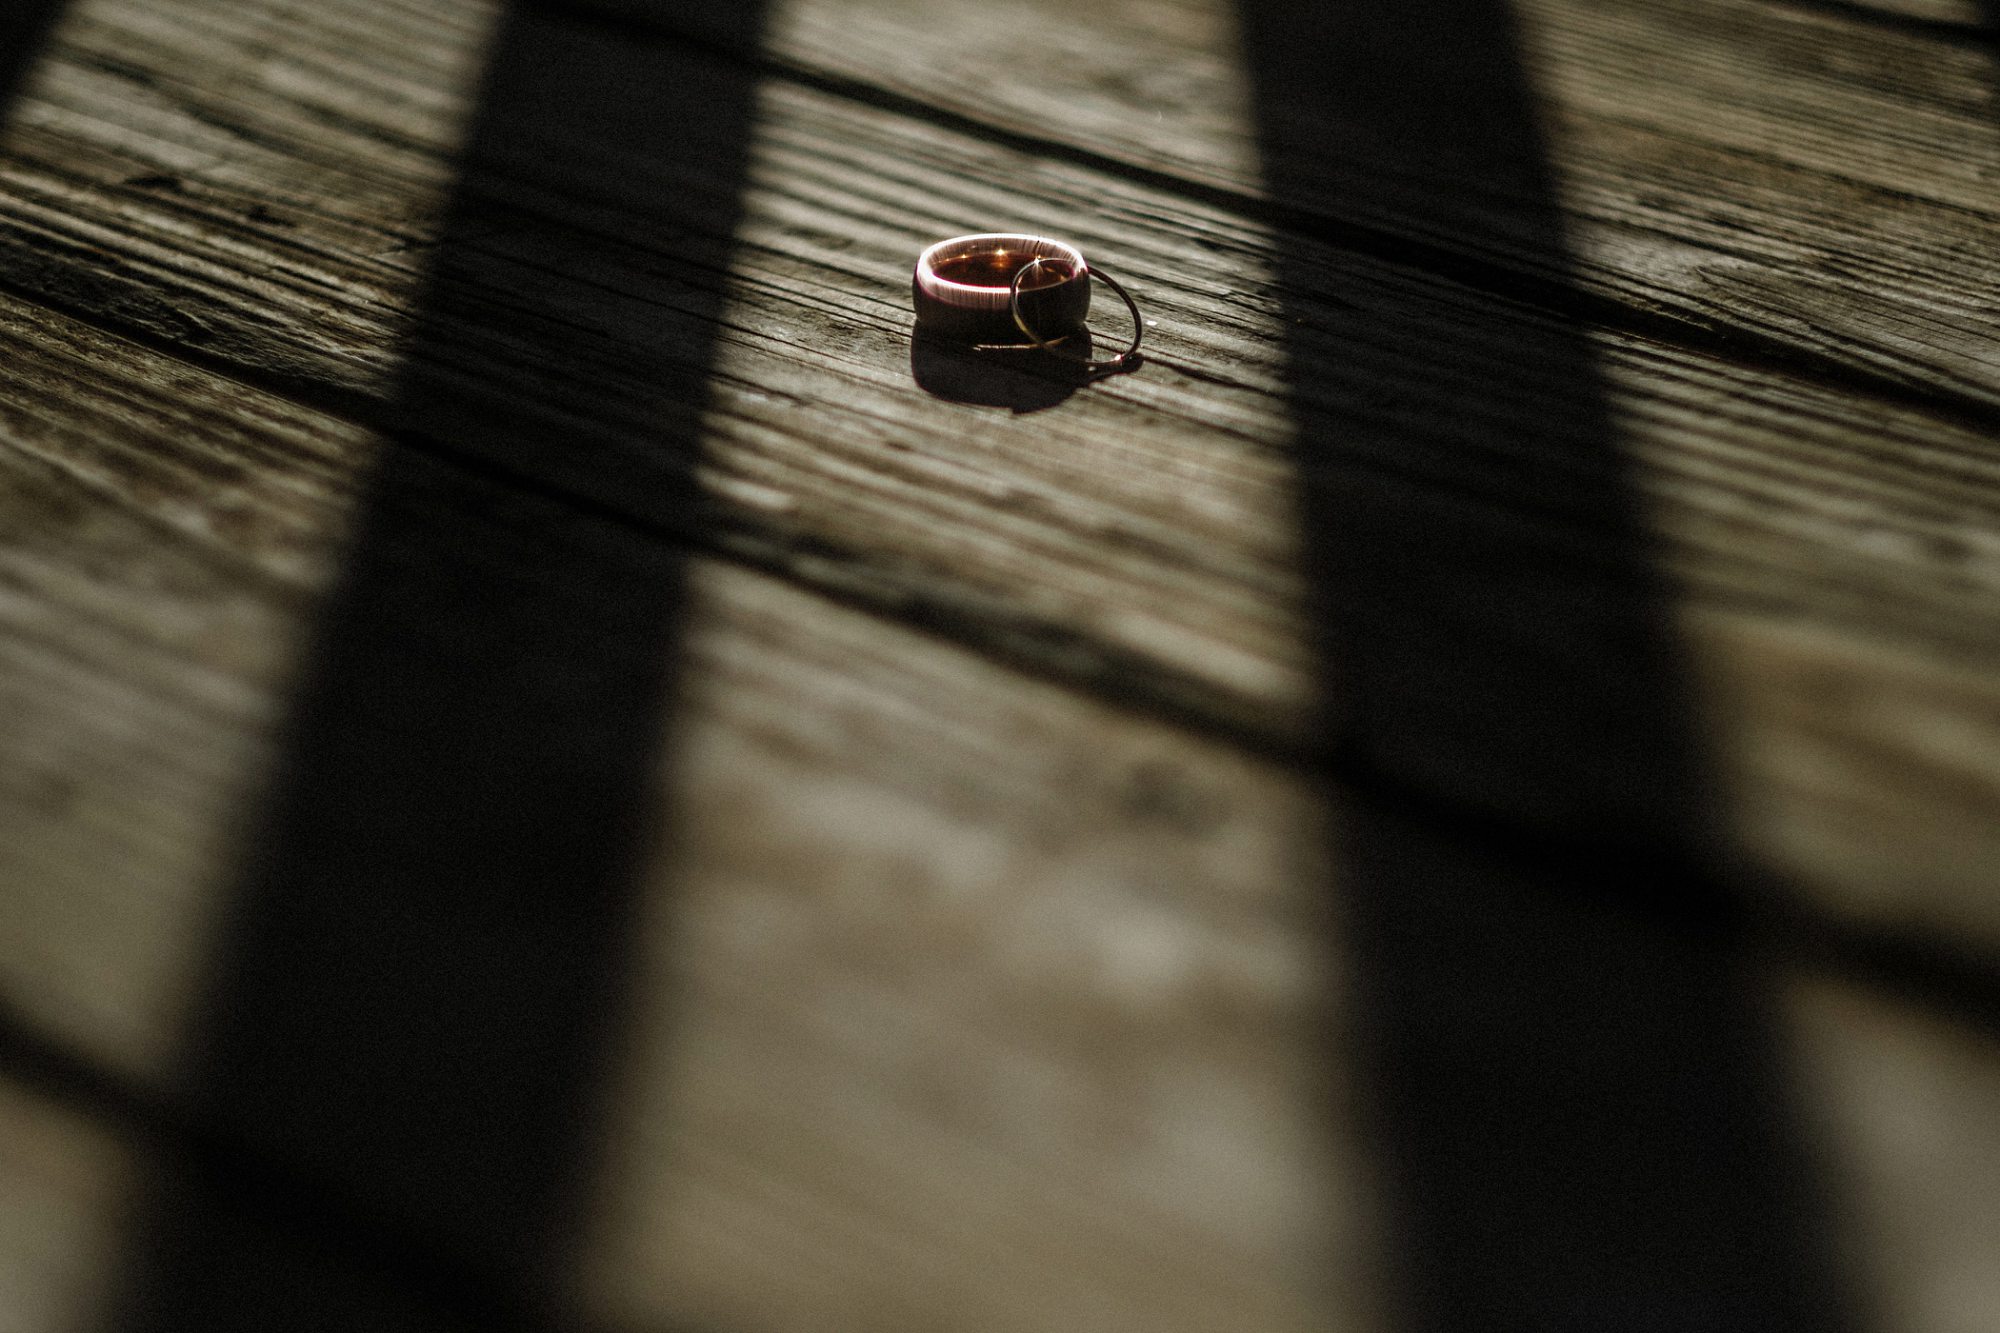 wedding rings, wood floor, shadows, contrast